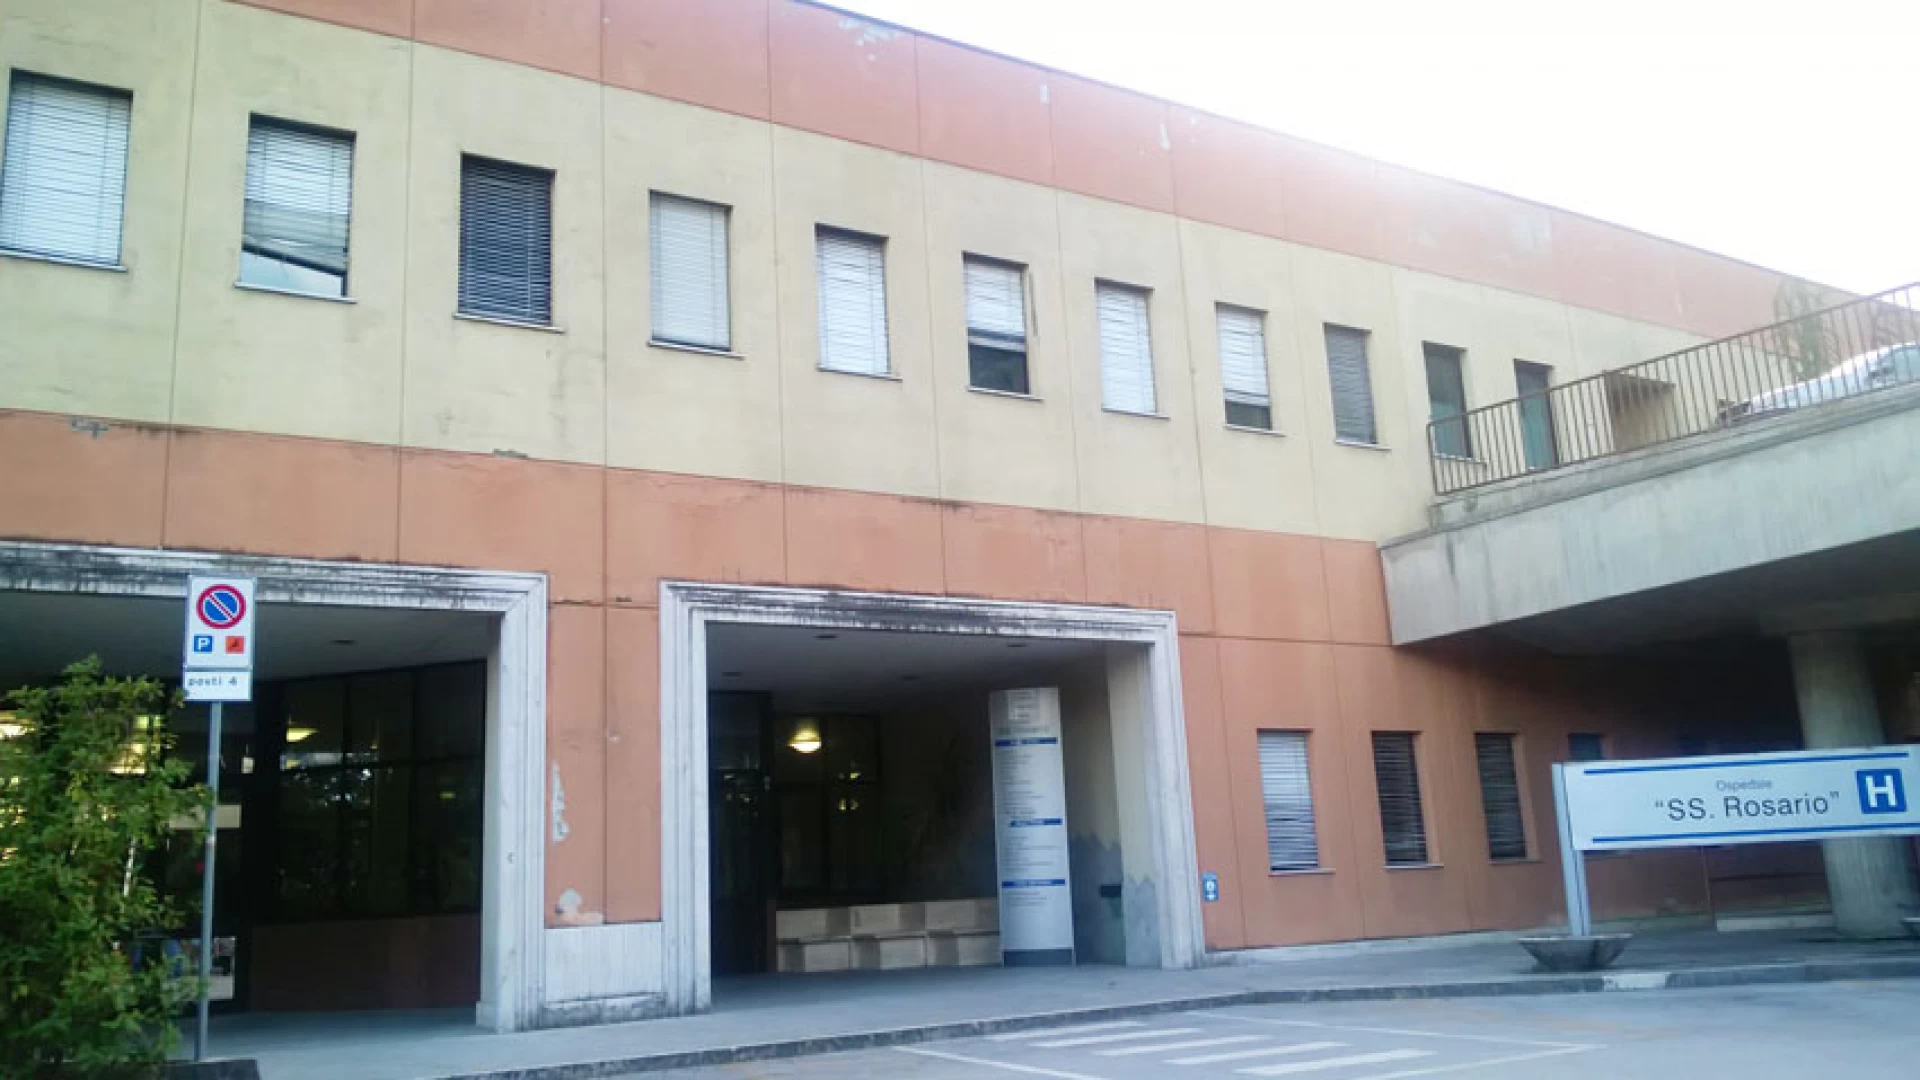 Venafro: Ospedale Santissimo Rosario. Alfredo Ricci: “Ora pretendiamo indicazioni chiare  e tempi certi”.